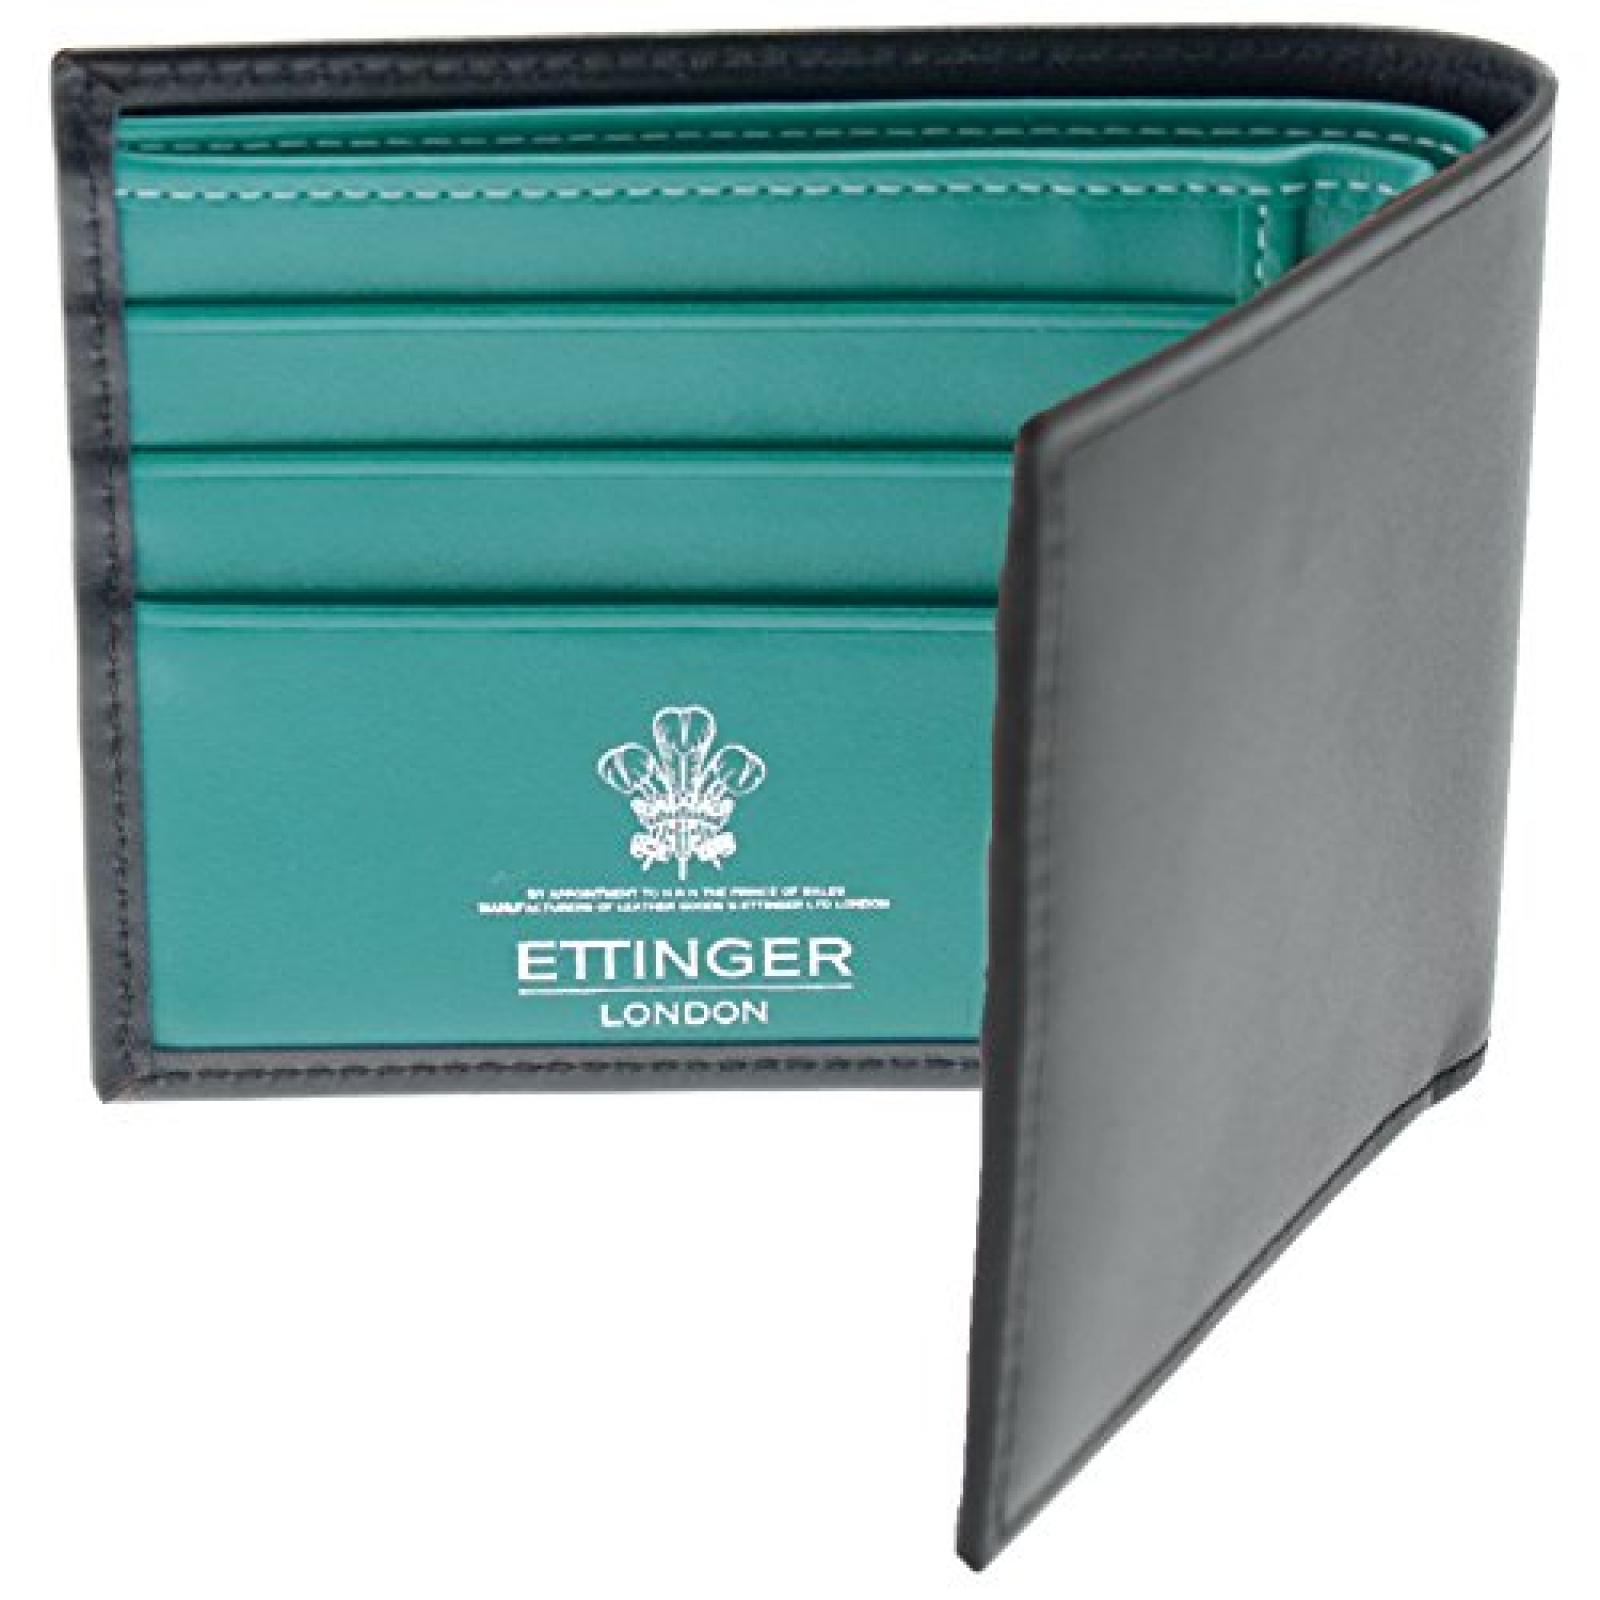 Ettinger - Brieftasche aus Leder mit Münzfach - Schwarz außen / Türkis innen 